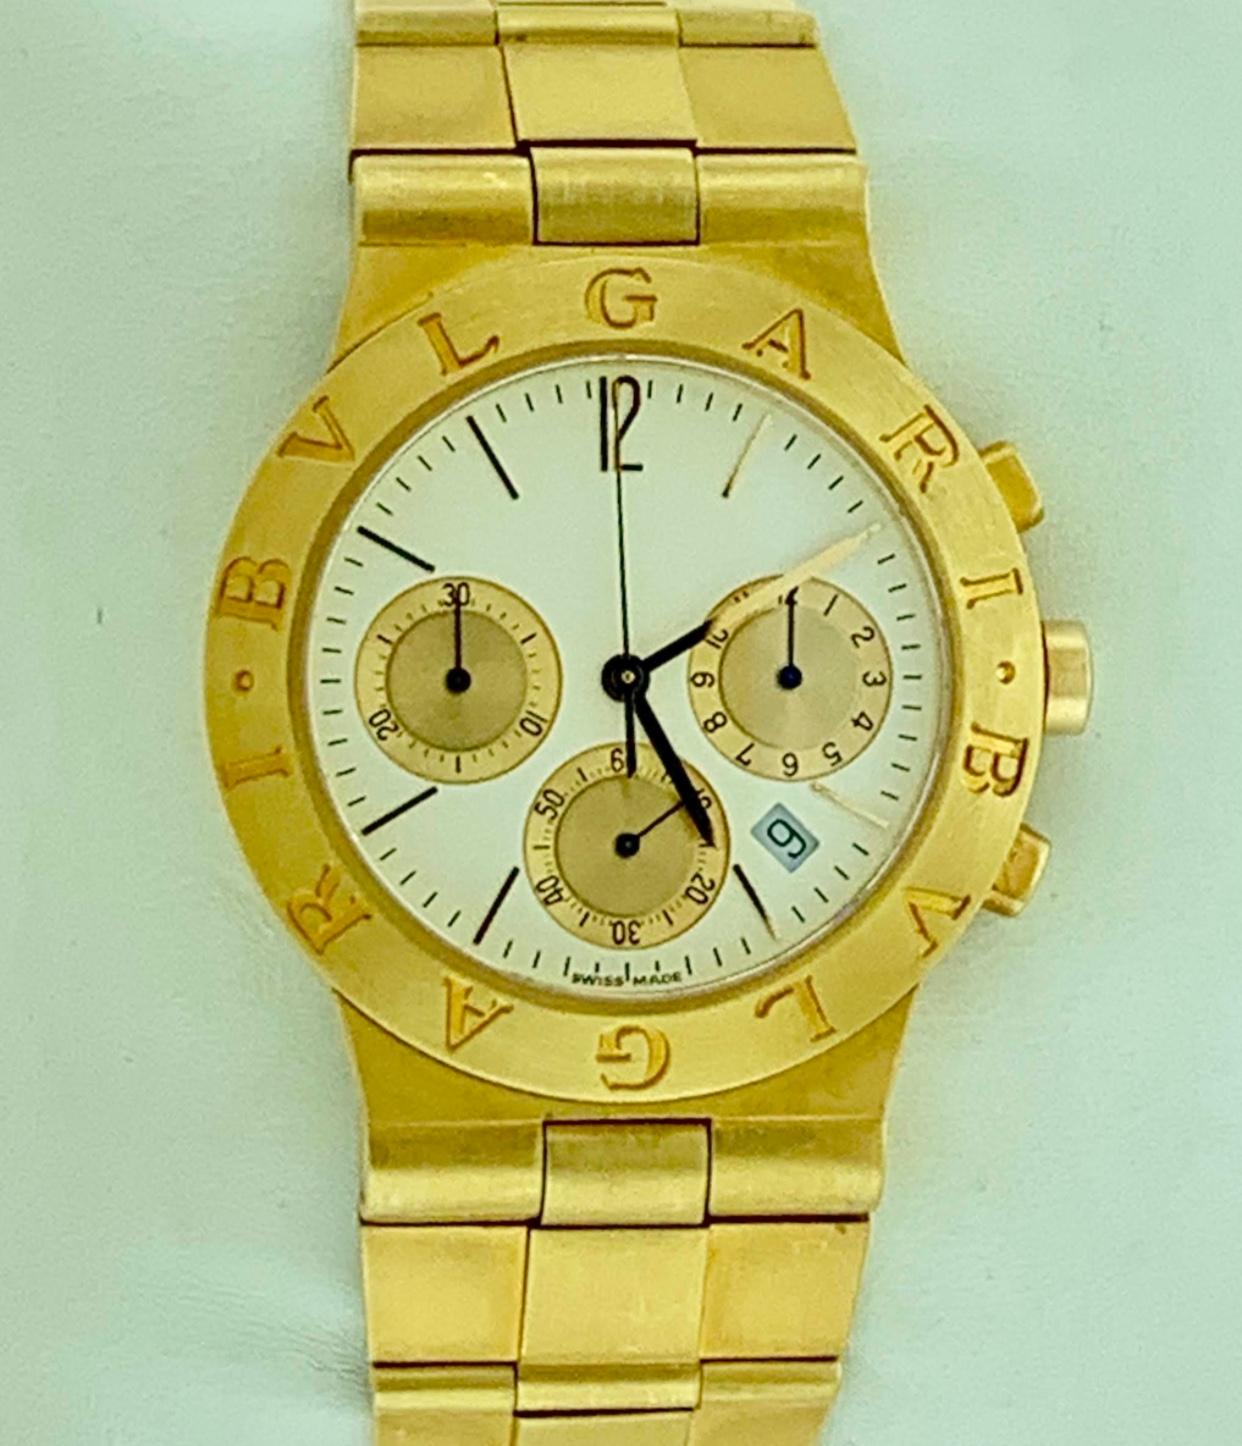 165 Gm 18 Karat Yellow Gold Bvlgari Chrono Watch Unisex Bvlgari Logo Watch 7